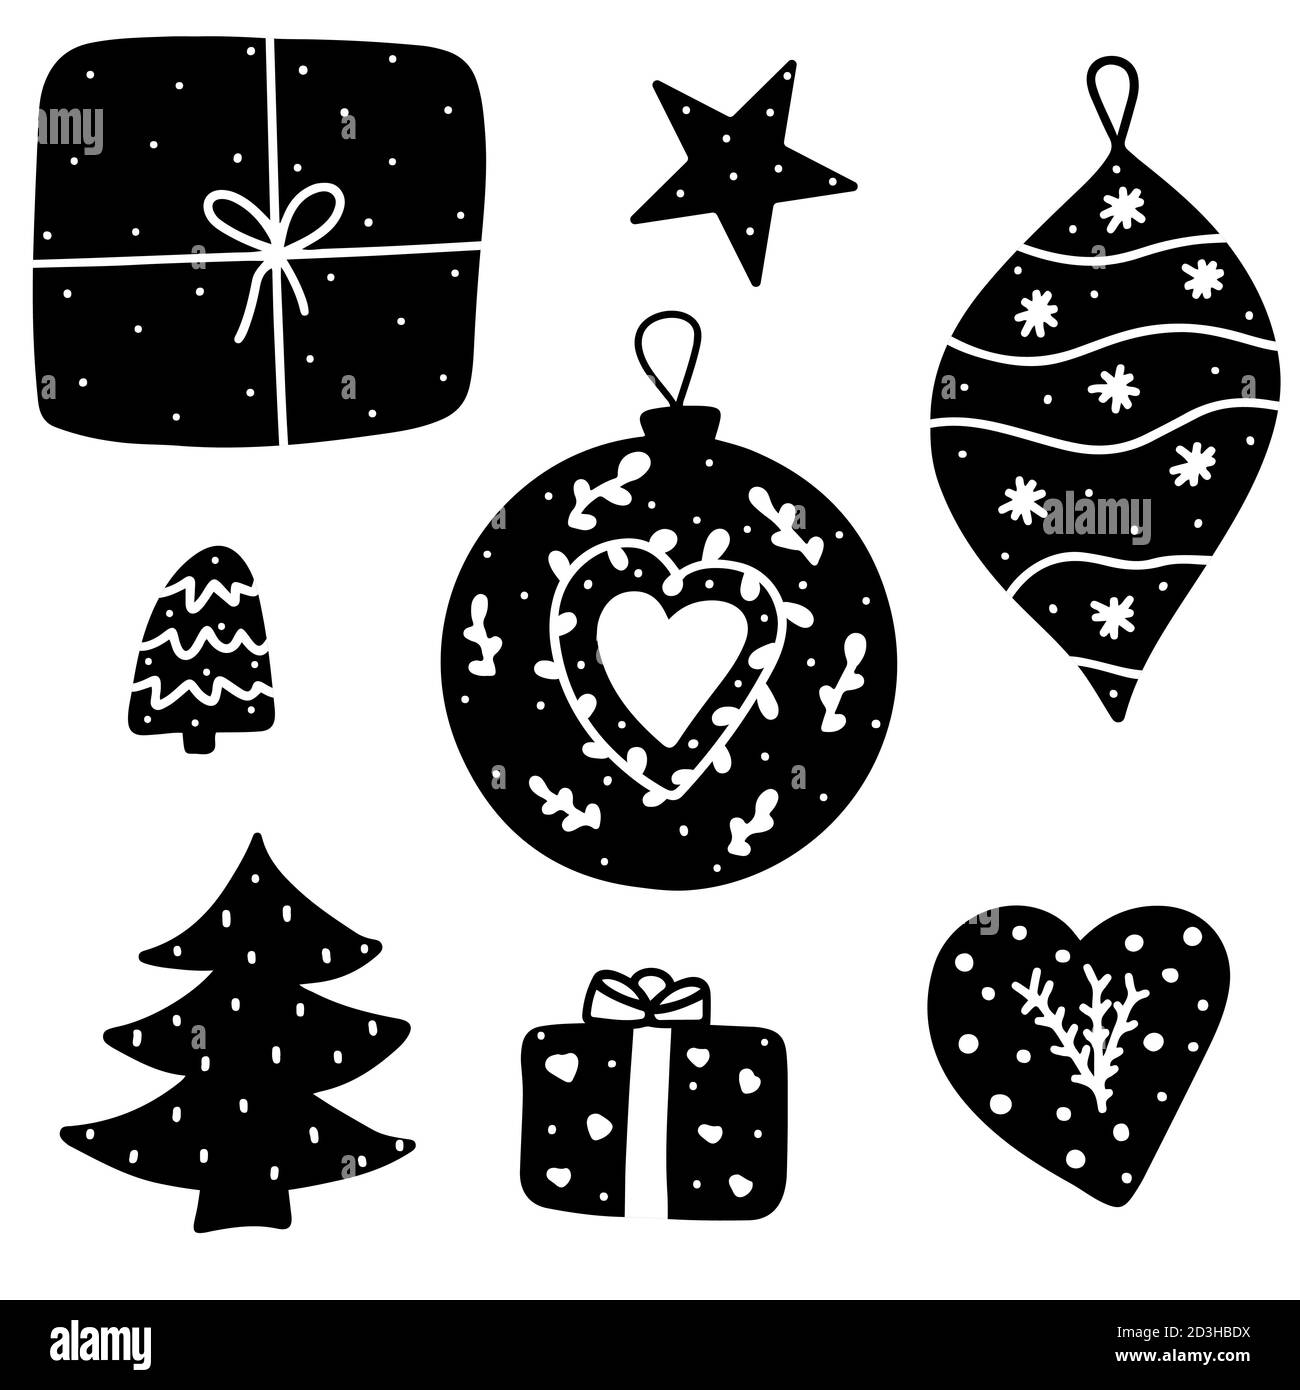 Natale decorazioni monocromatiche doodle stile illustrazione vettoriale. Confezione regalo, stella, albero di Natale, baubles e decorazioni a forma di cuore. Illustrazione Vettoriale